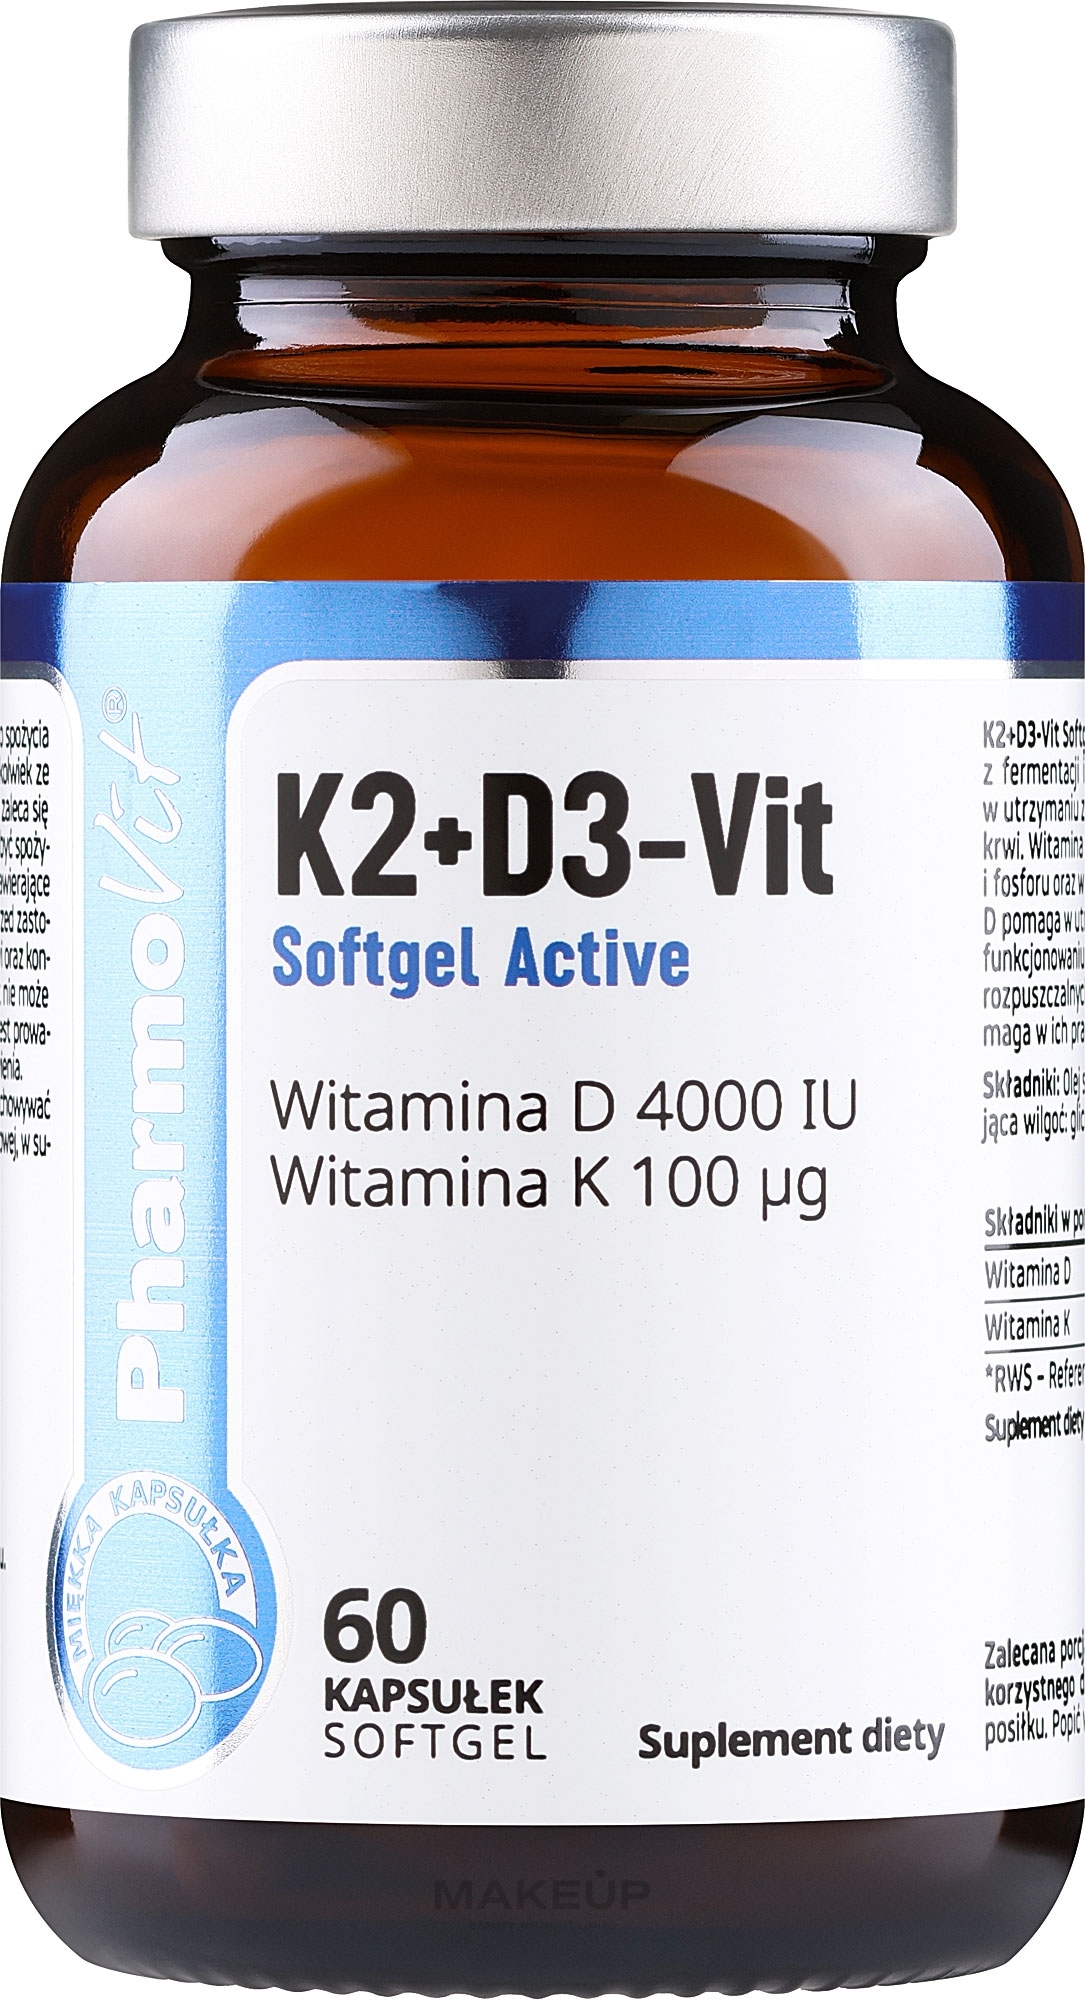 Kapsułki z witaminą K2 + D3 - Pharmovit Clean Label K2 + D3-Vit Softgel Active — Zdjęcie 60 szt.